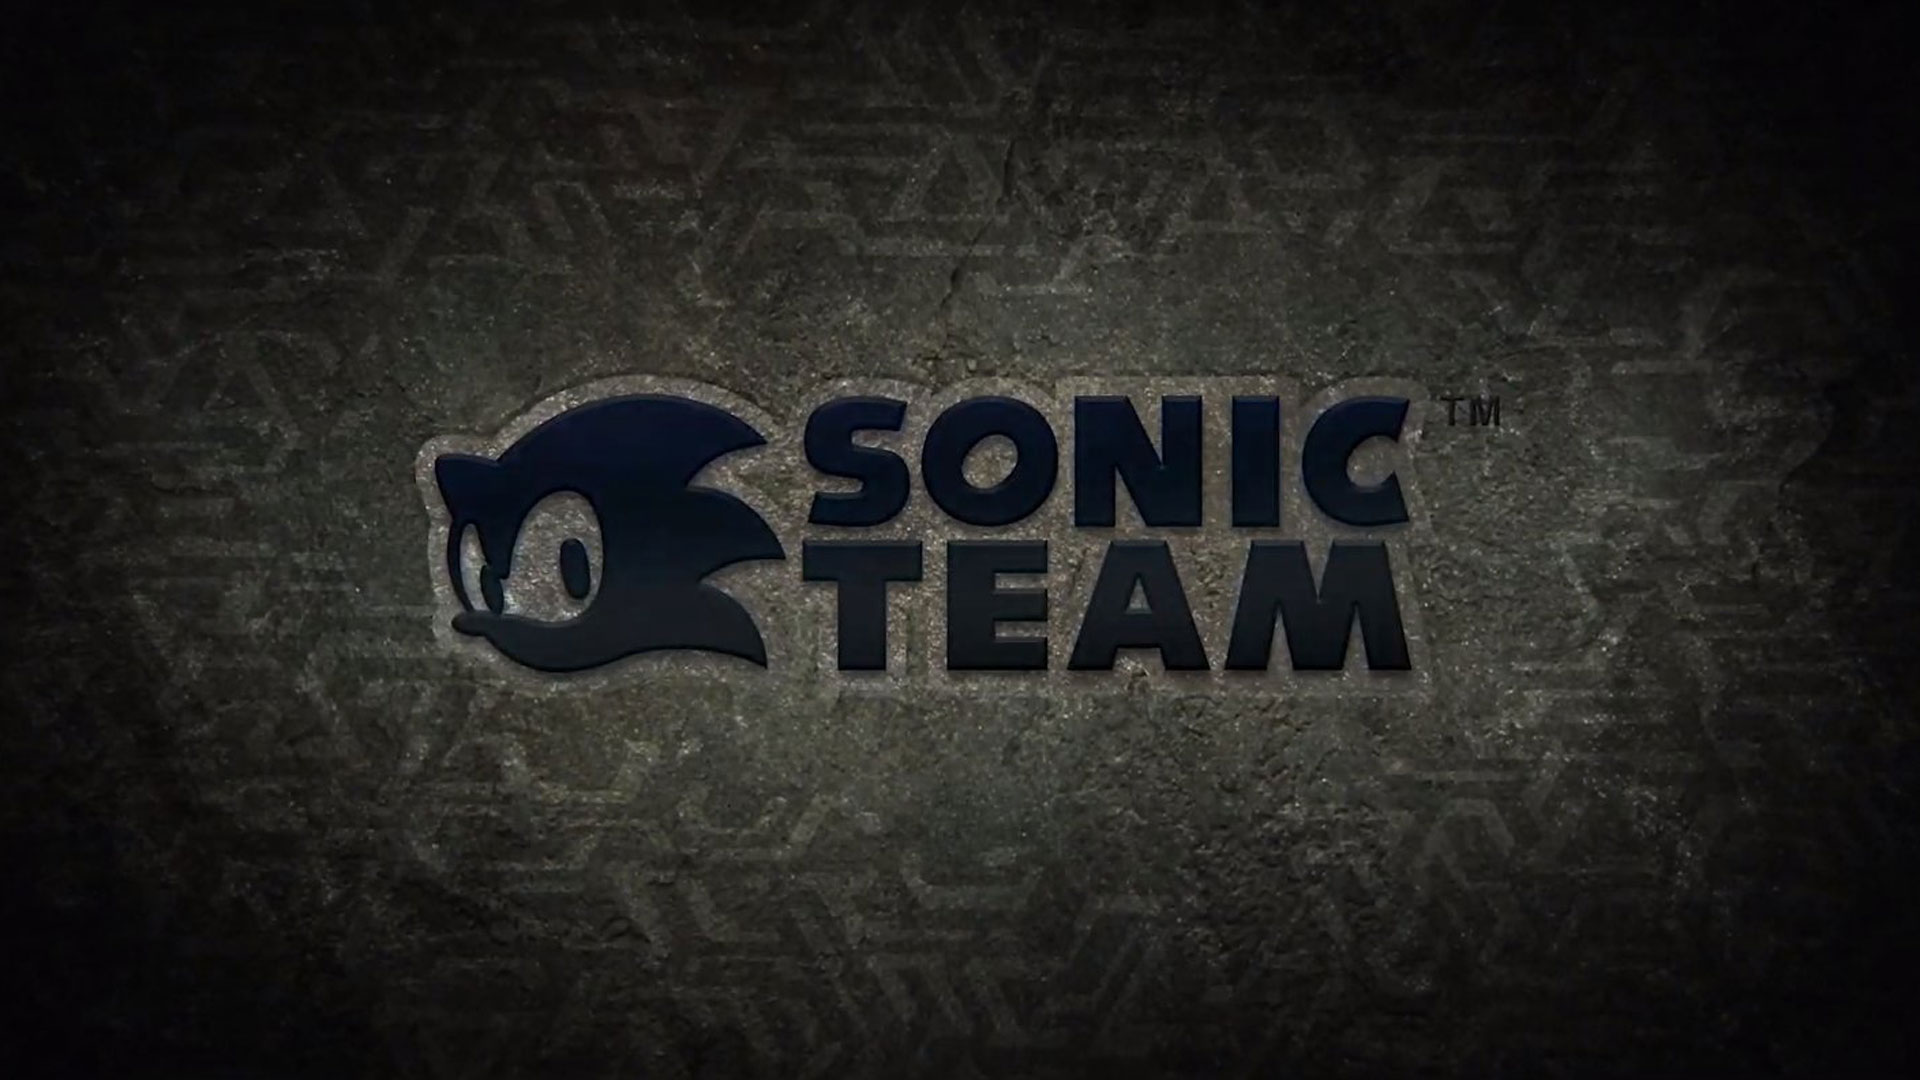 لوگو سونیک تیم سگا در بازی Sonic جدید سال ۲۰۲۲ میلادی